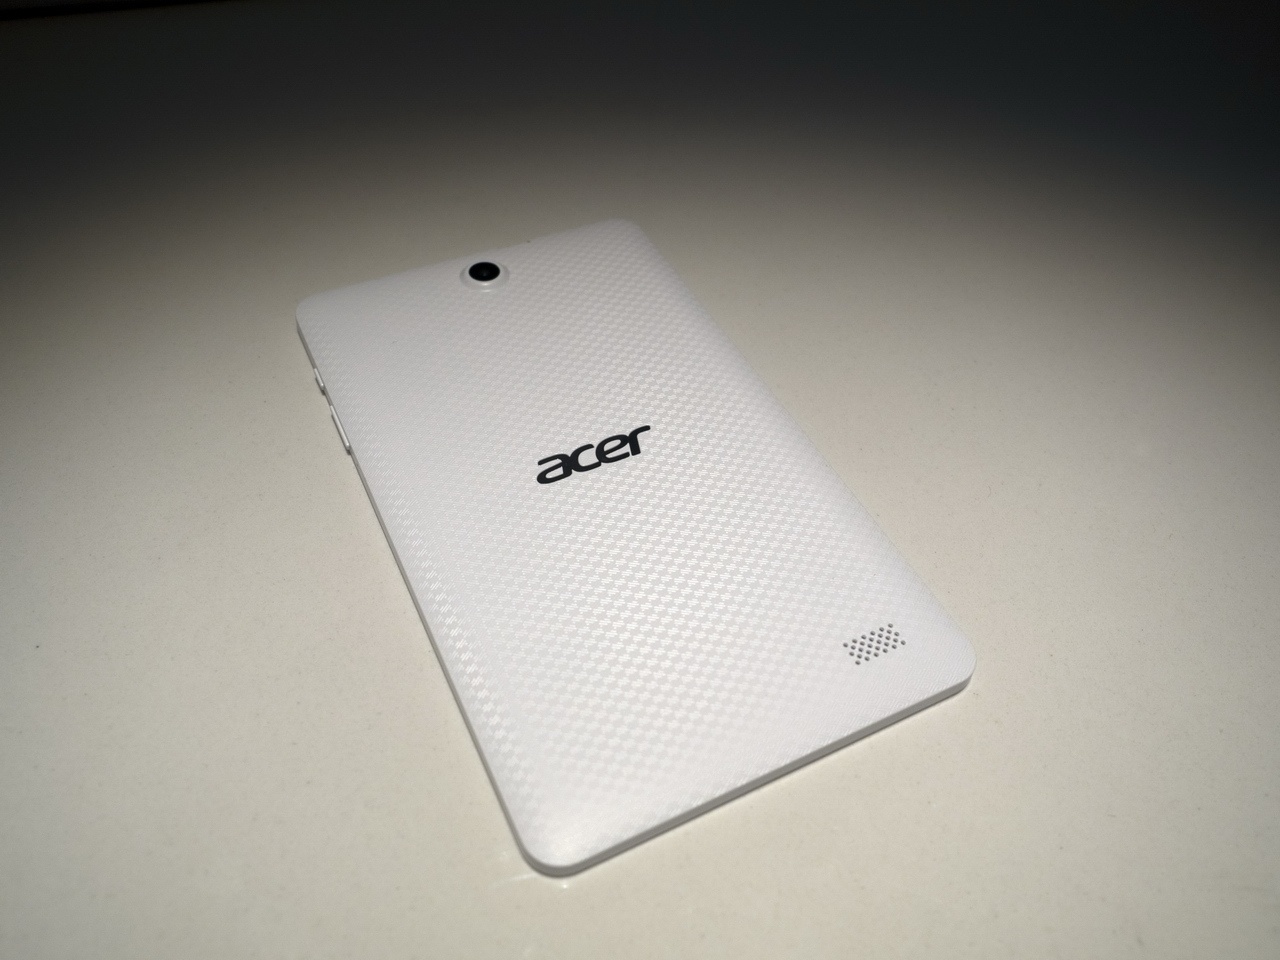 Acer на CES 2016: мониторы, планшеты, игровые ноутбуки и ультрамобильный трансформер - 11